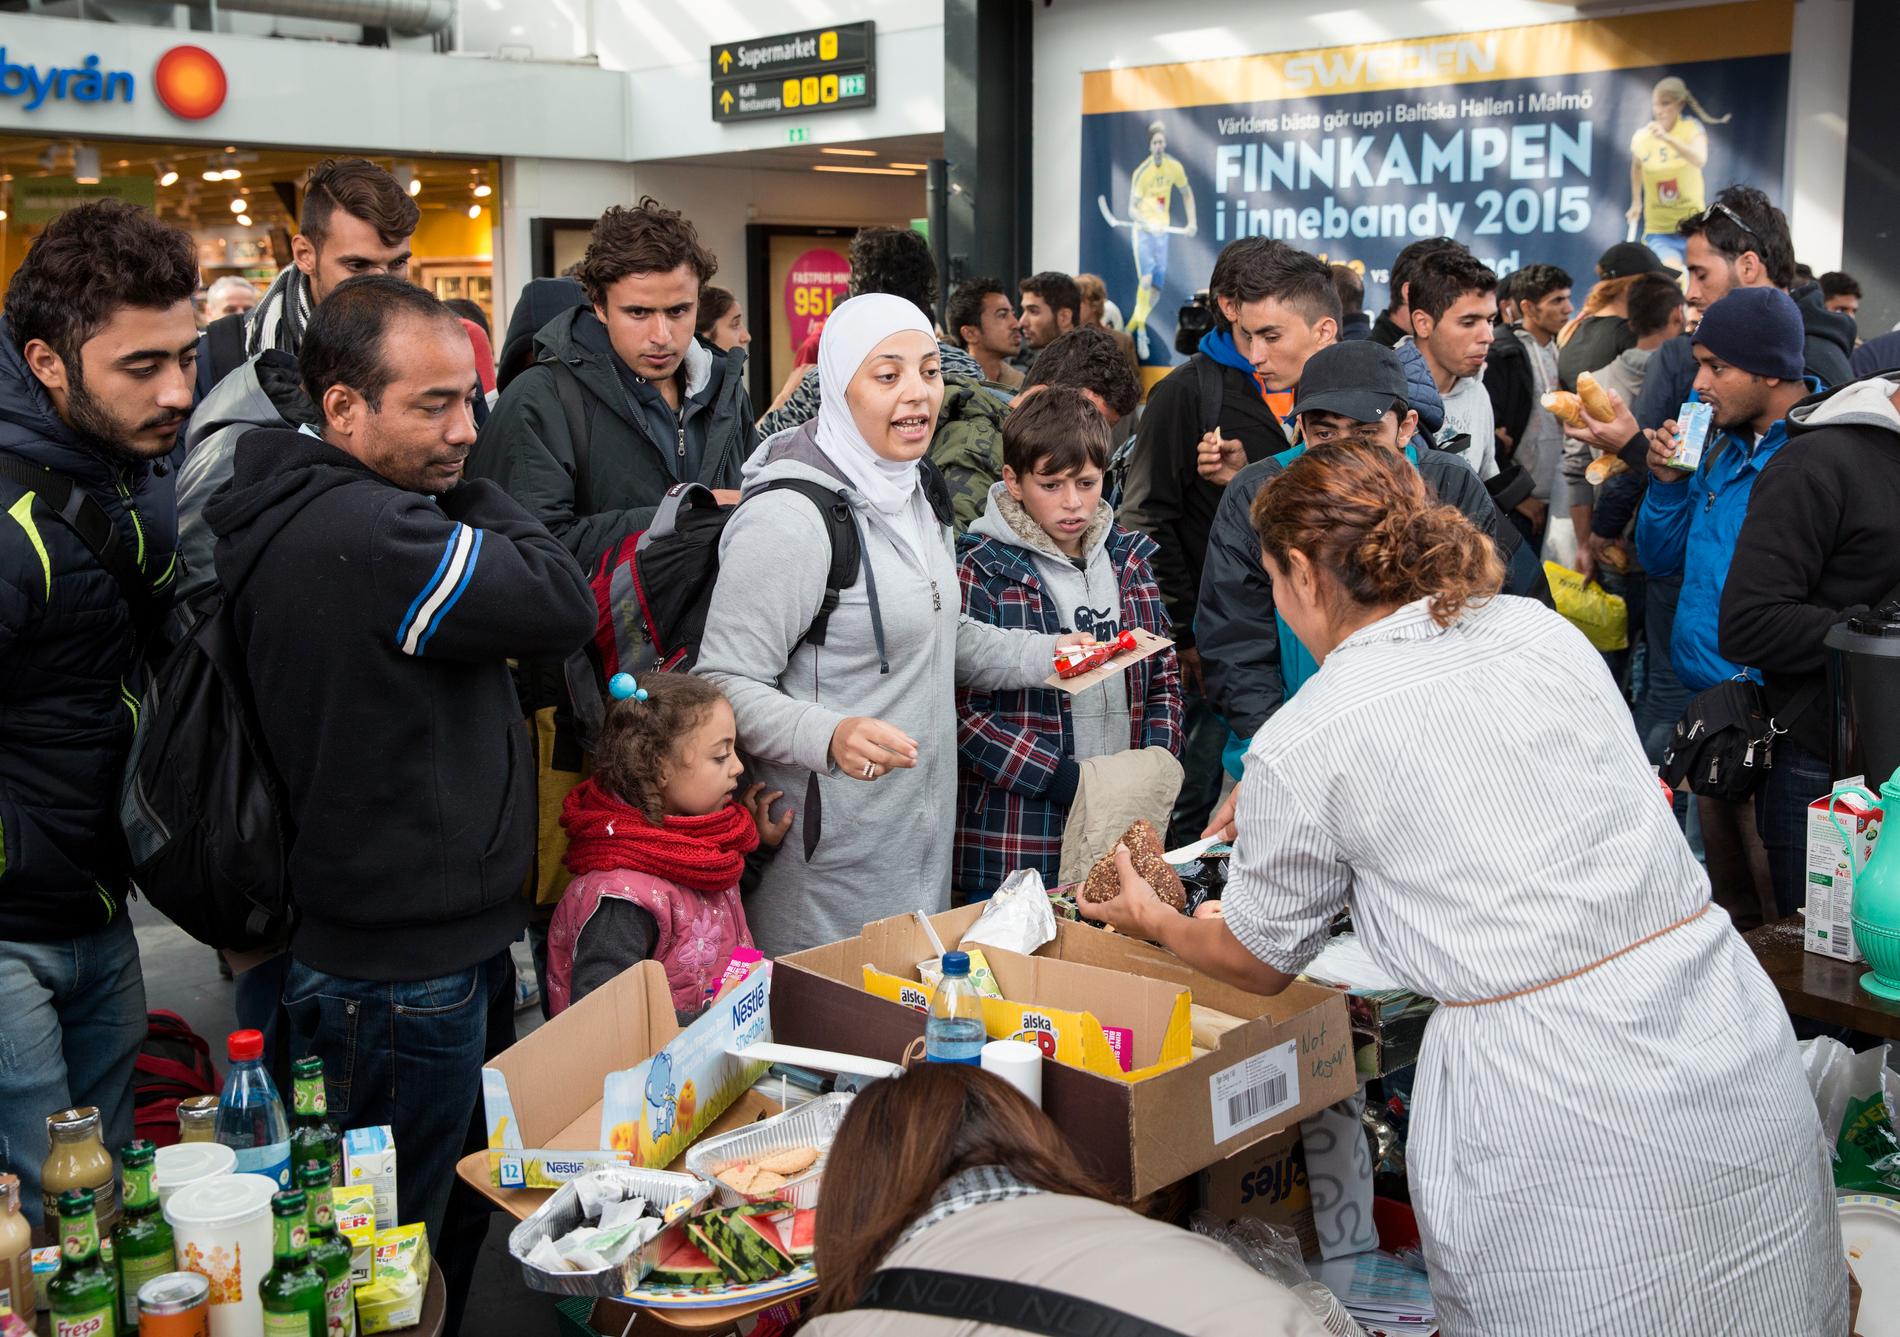 Matutdelning till flyktingar på Malmö centralstation på torsdagen. Flyktingar måste vara välkomna i Sveriges alla kommuner, skriver debattörerna.